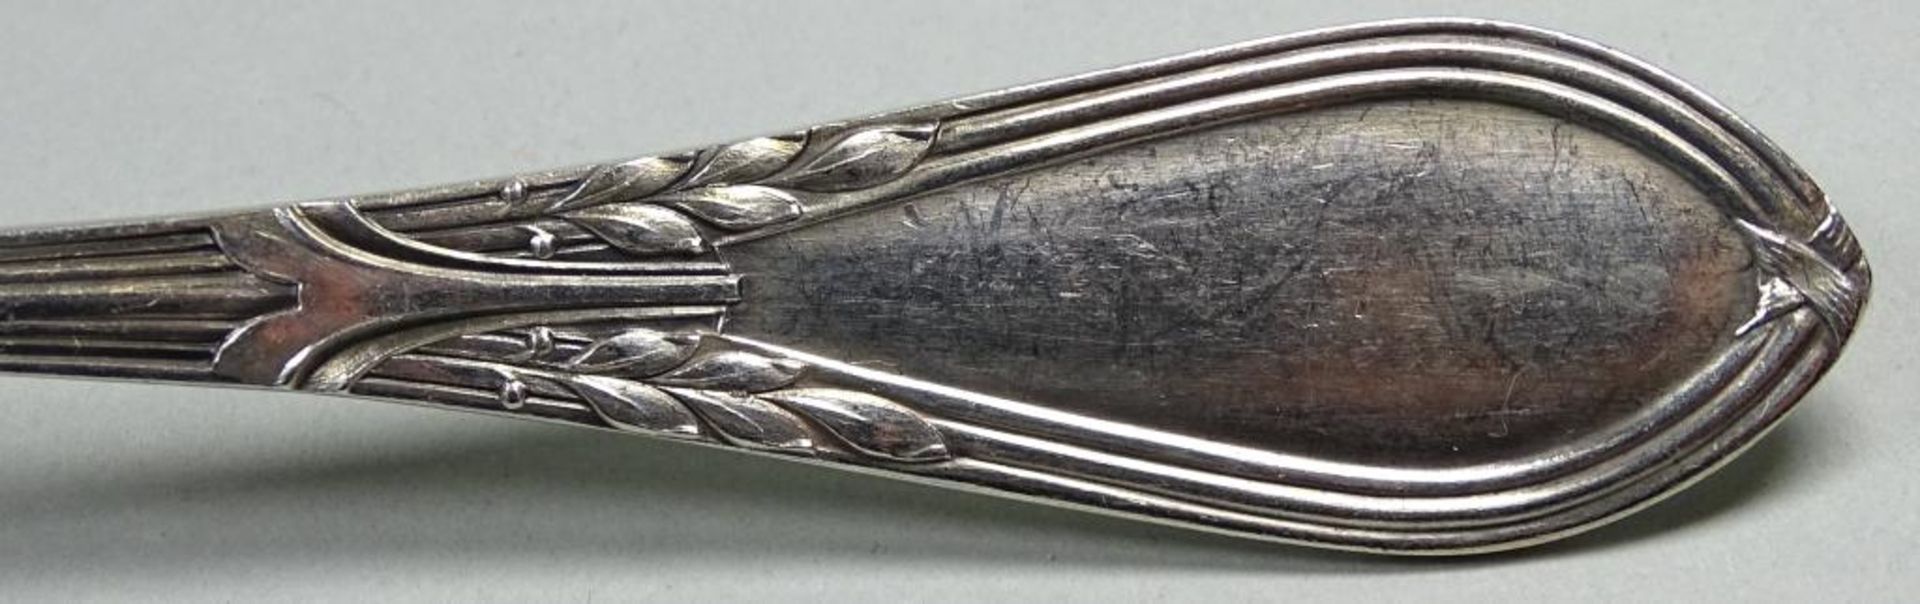 Zwei Esslöffel,Silber, ges.Gew. 121gr.L- 21,5cm,1x Augsburger Faden,Monogrammiert, 1x datiert 190 - Bild 4 aus 9